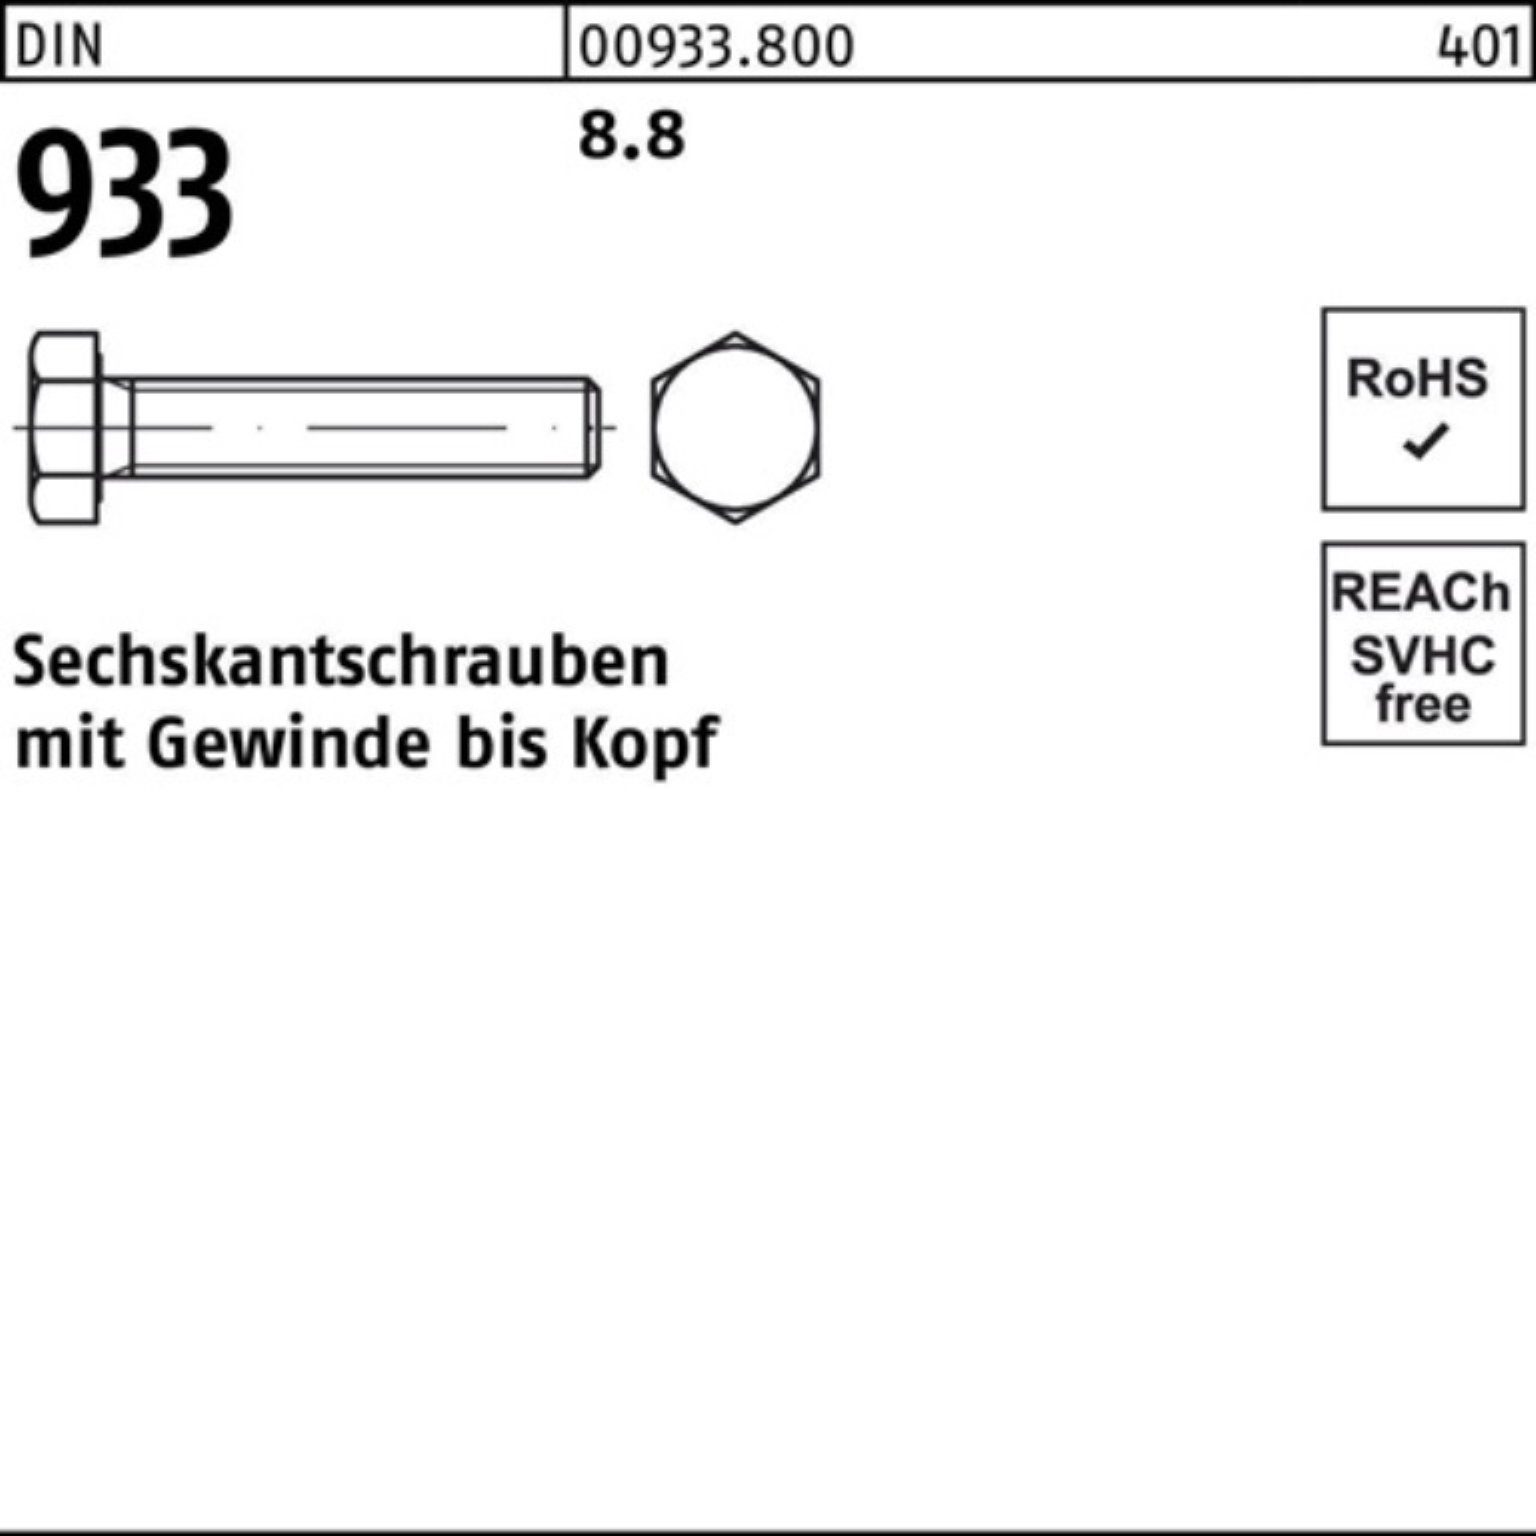 Reyher Sechskantschraube 100er 933 DIN DIN Pack Sechskantschraube 933 170 25 M18x 8.8 VG Stück